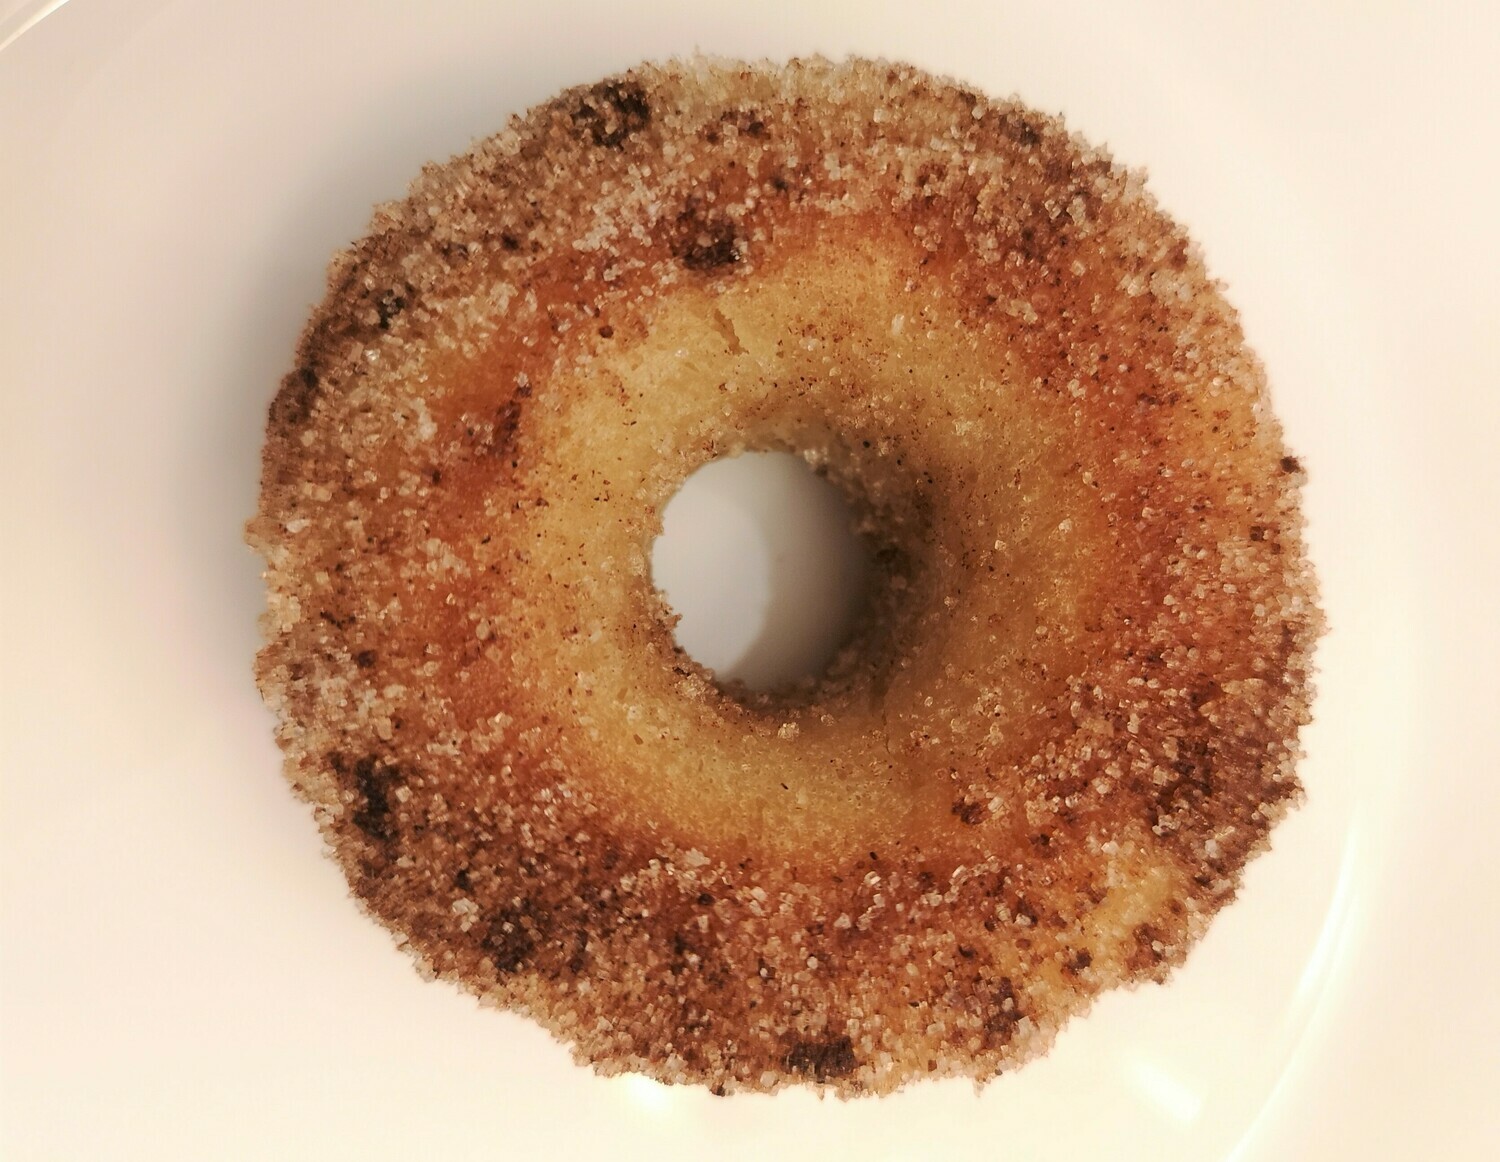 Vegan baked cinnamon donut. GLUTEN FREE available.